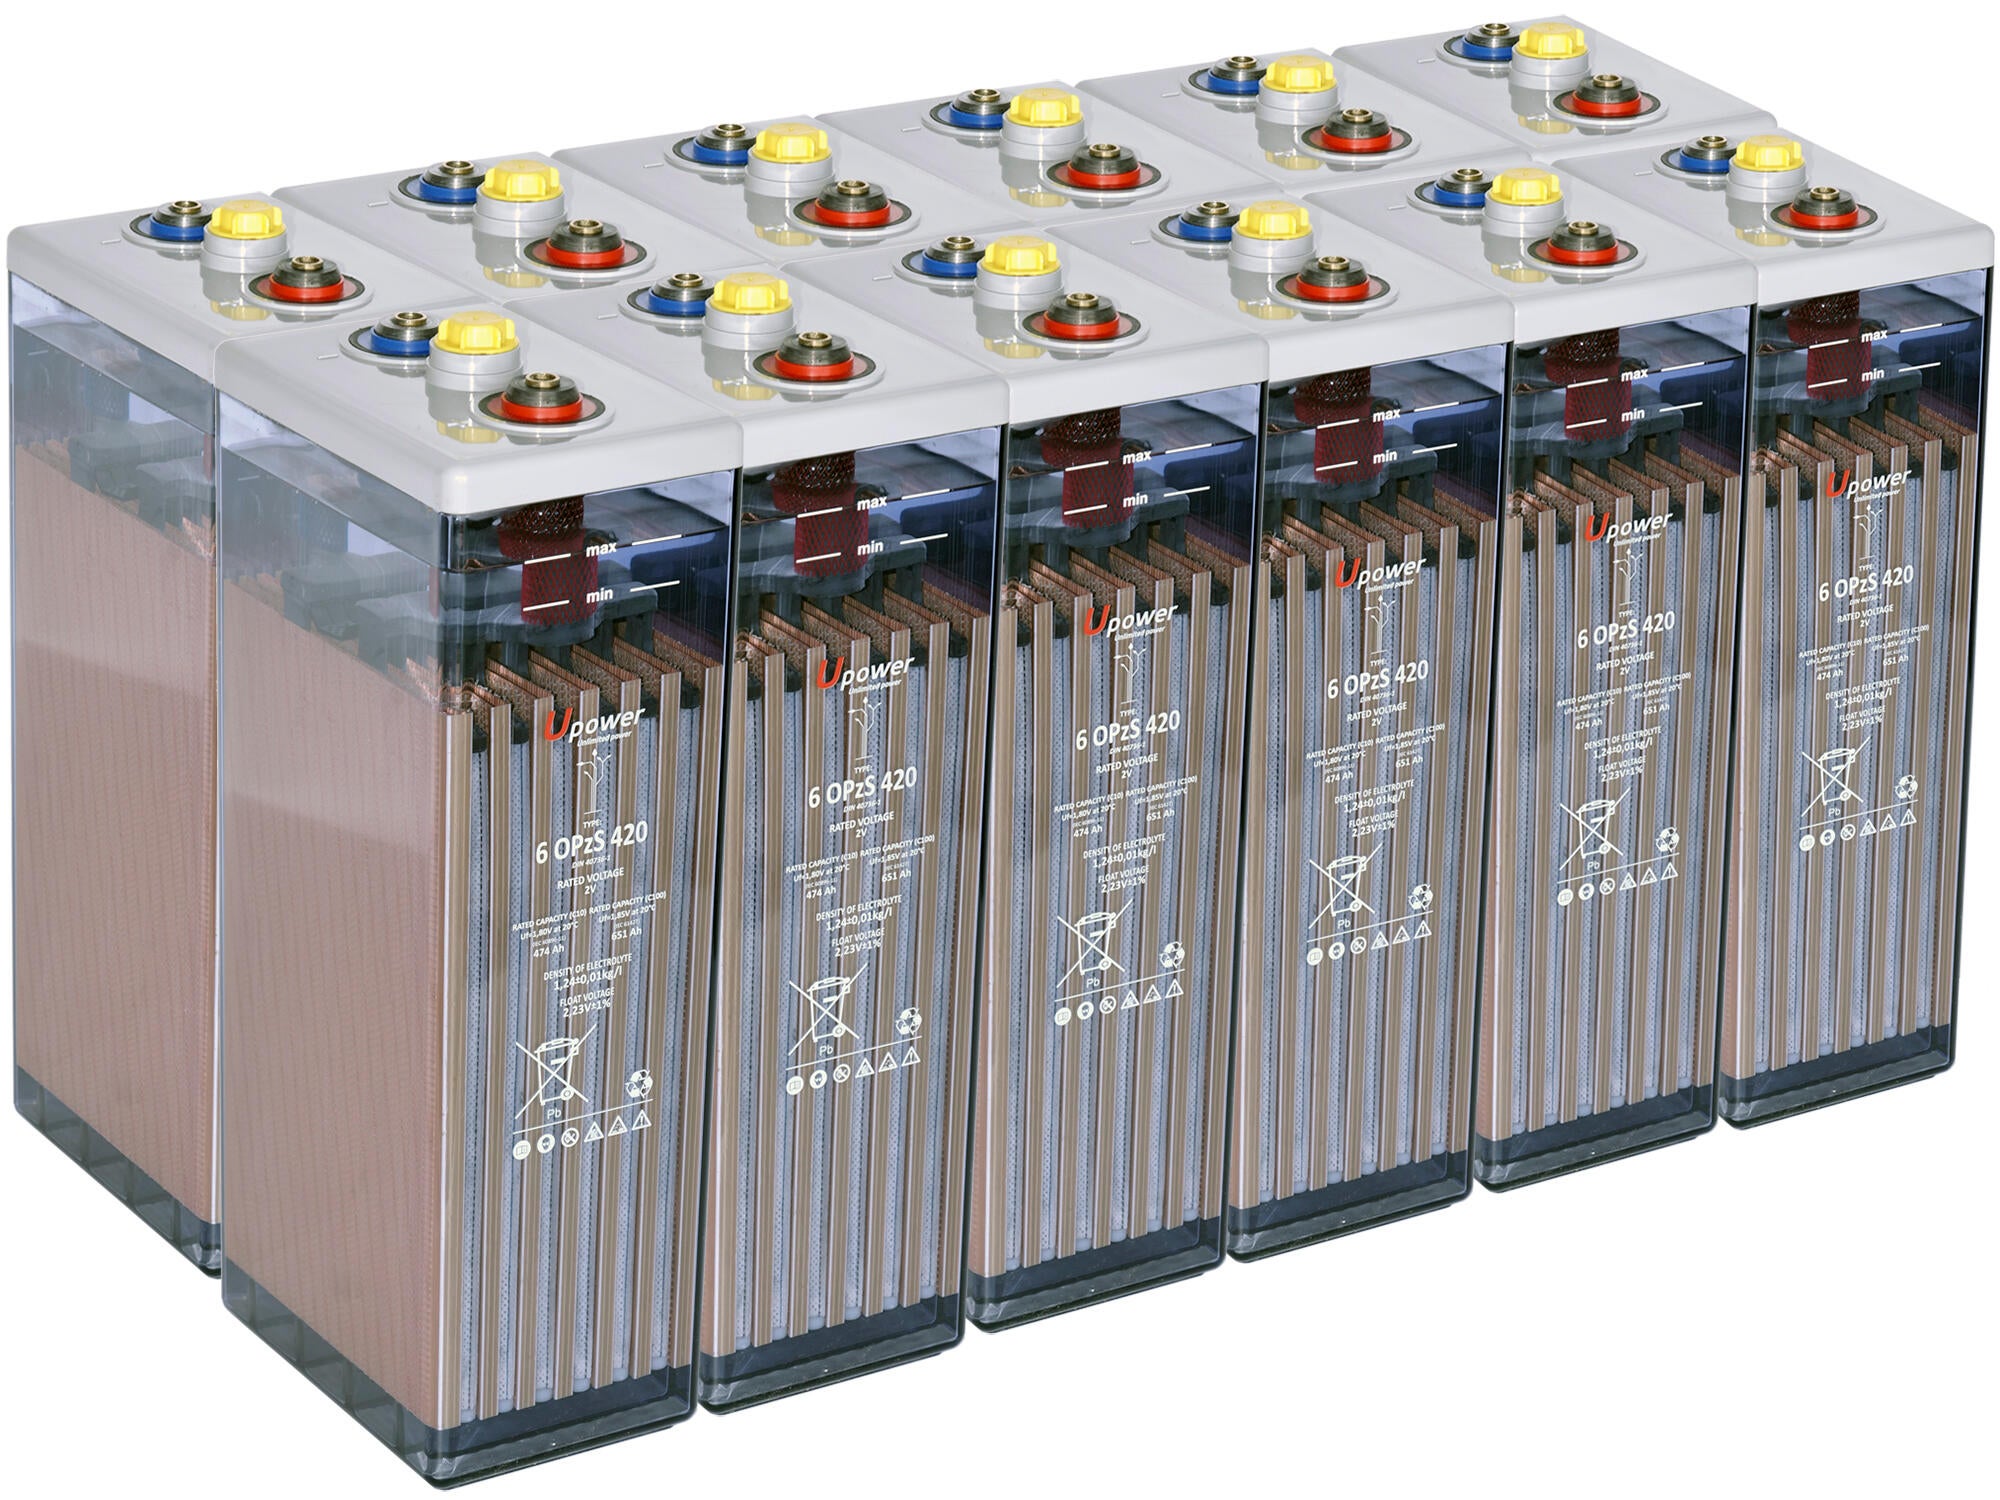 Batería solar estacionaria Sigma 6 OPzS 420 (6 ud. 12V) 651Ah/C100 - Fusión  Energía Solar